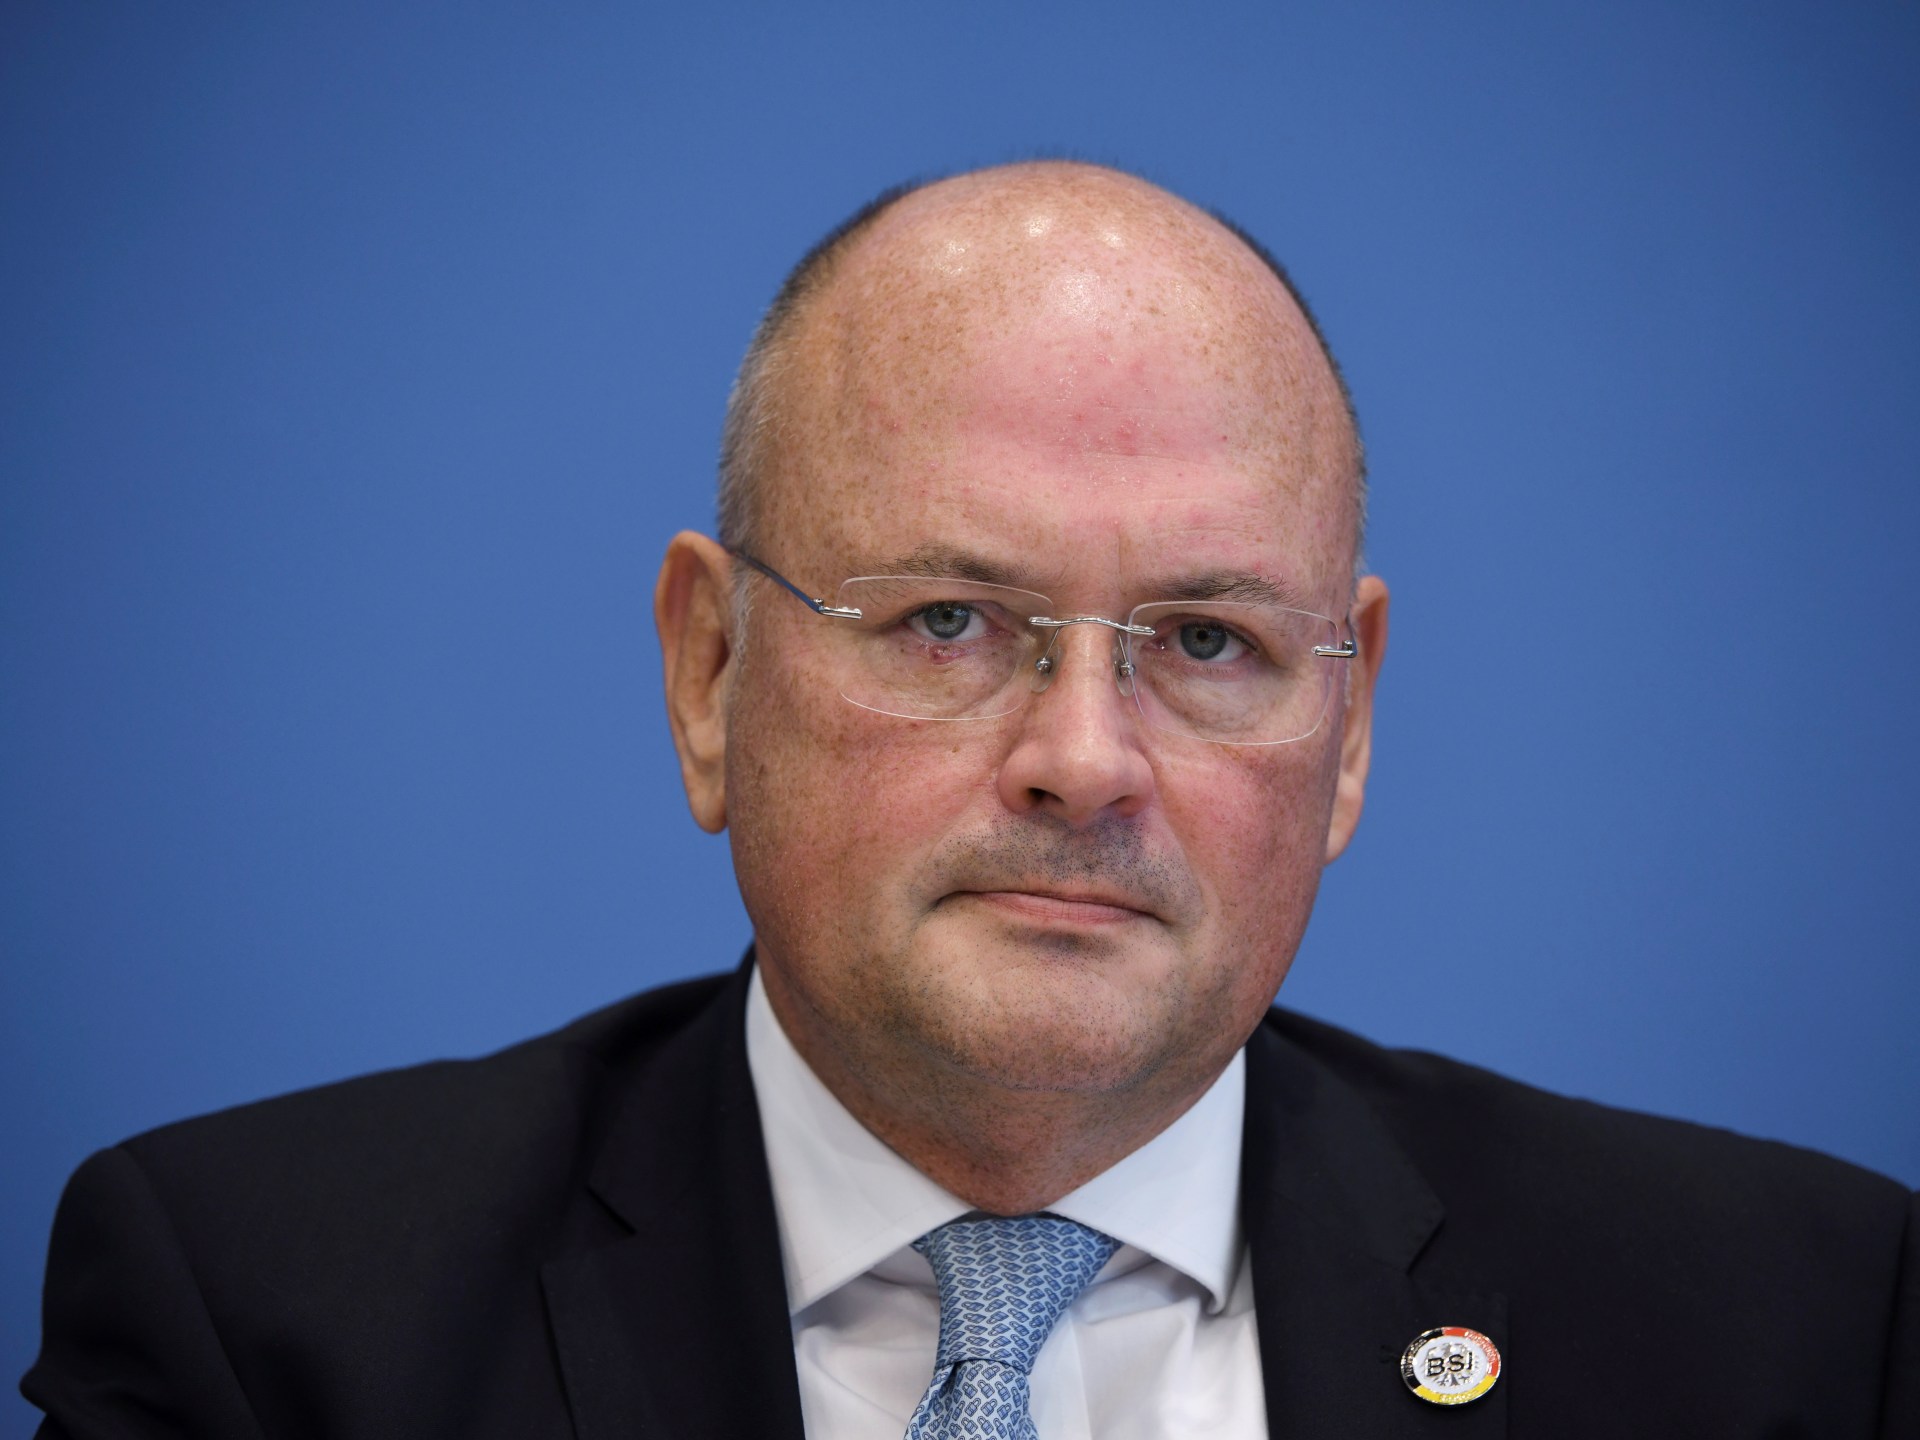 Alemania despide al jefe de ciberseguridad con presuntos vínculos con Rusia |  Noticias de la guerra Rusia-Ucrania